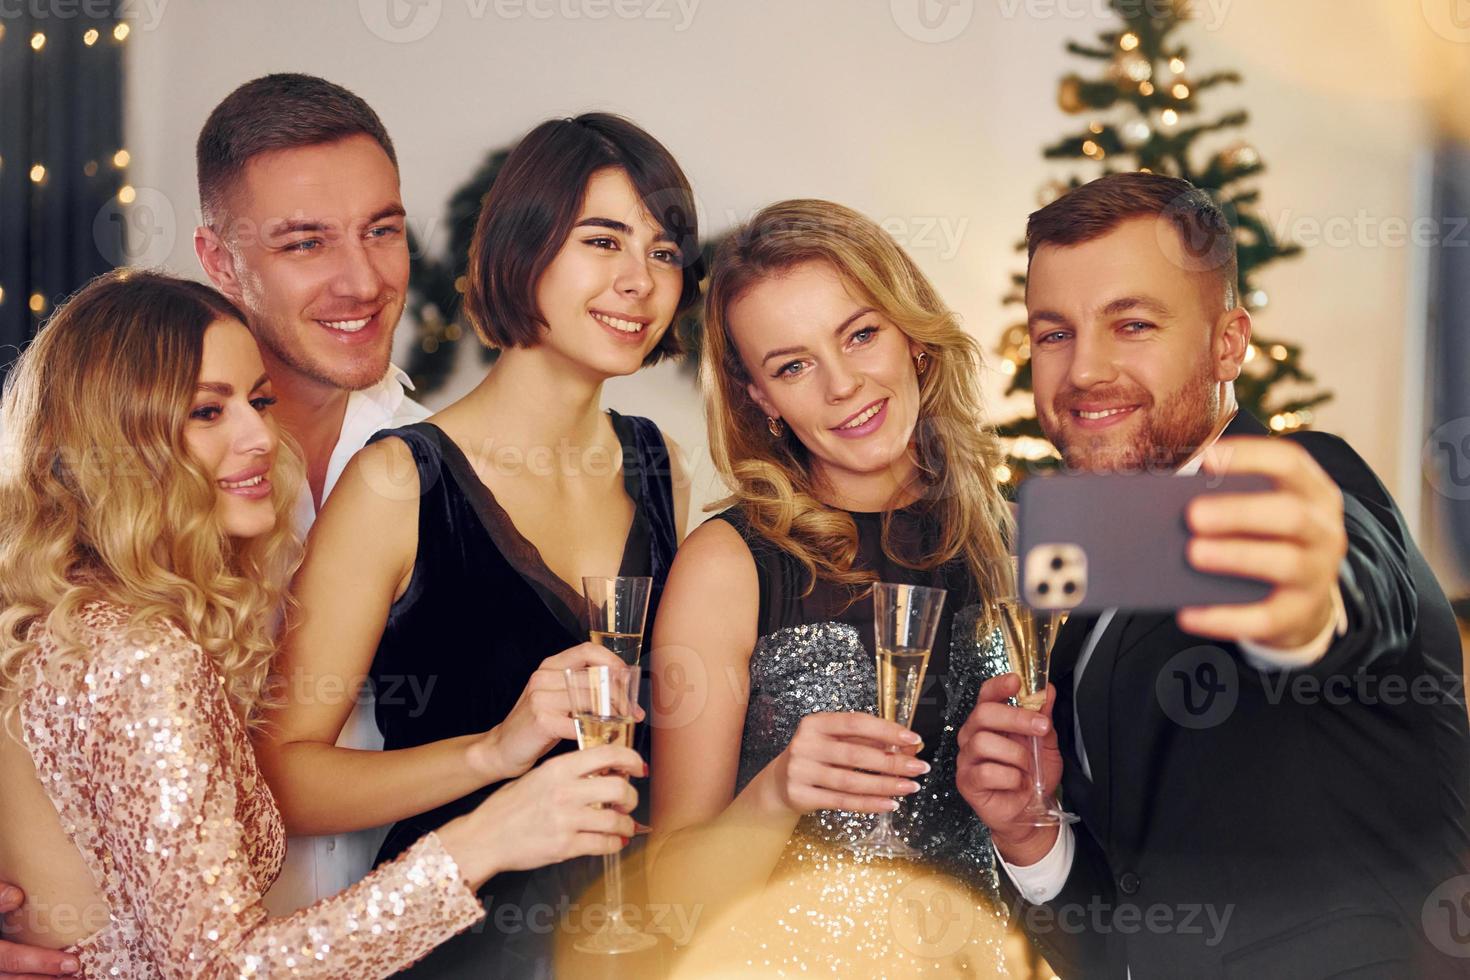 haciendo selfie grupo de personas tienen una fiesta de año nuevo en el interior juntos foto